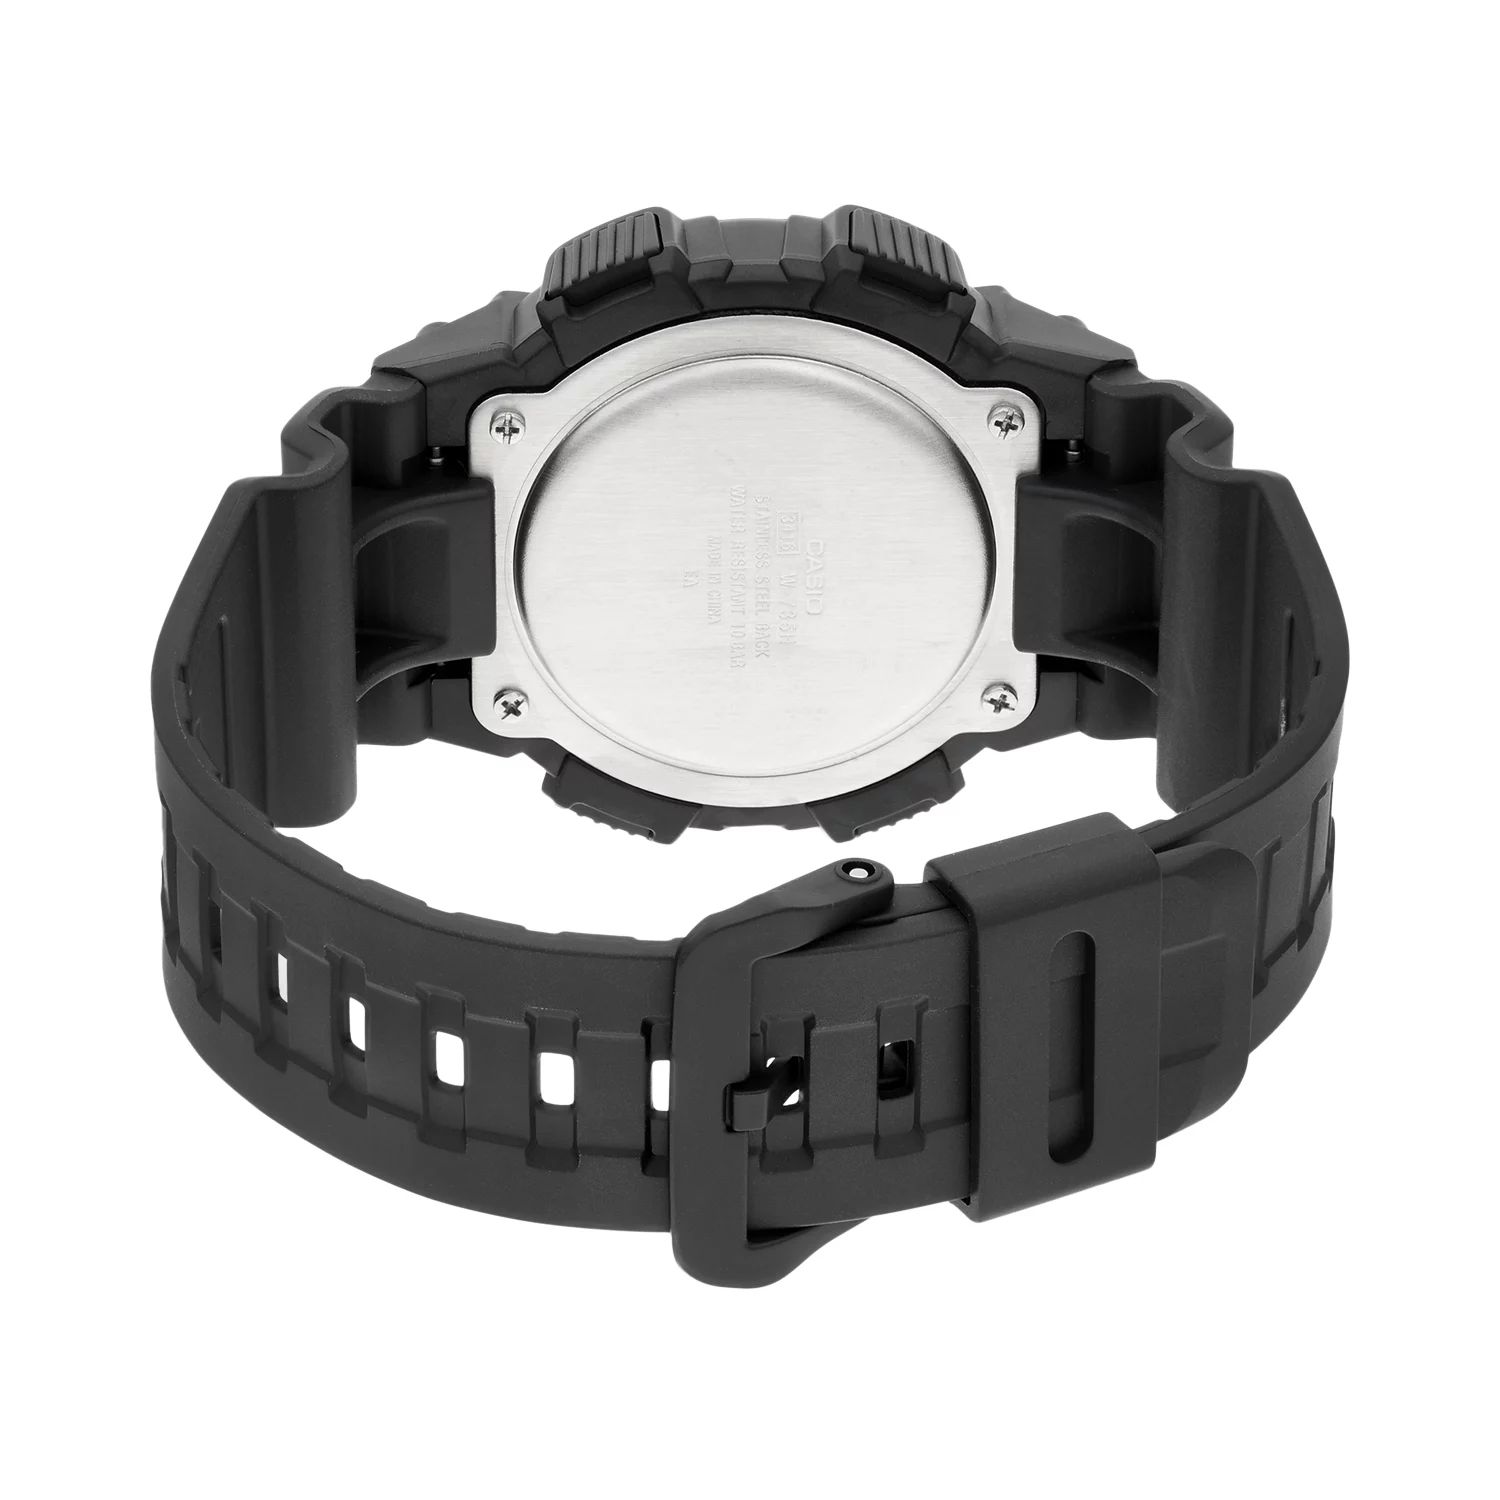 Мужские часы с цифровым хронографом и вибросигнализацией — W735H-1A2V Casio цена и фото